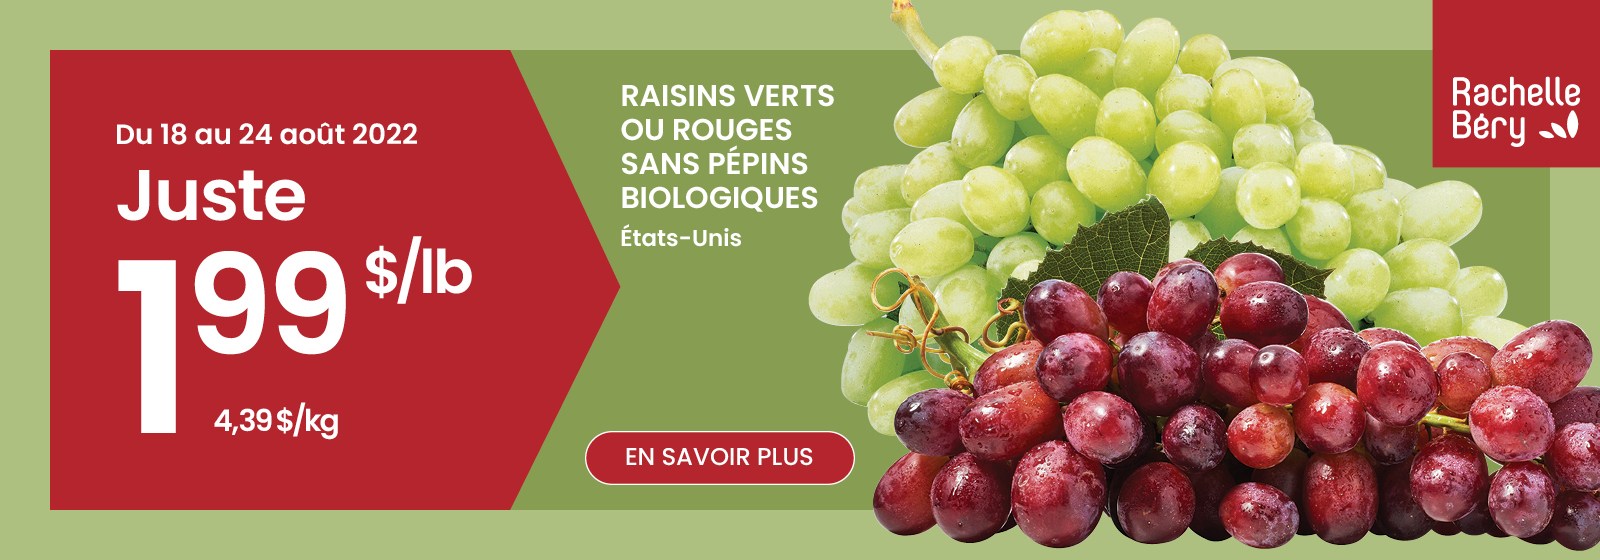 Texte à lire : 'Achetez des raisins verts ou rouges biologiques sans pépins des États-Unis pour seulement $1,99 par lb du 18 au 24 août 2022. Cliquez sur le bouton 'En savoir plus' pour plus d'informations.'